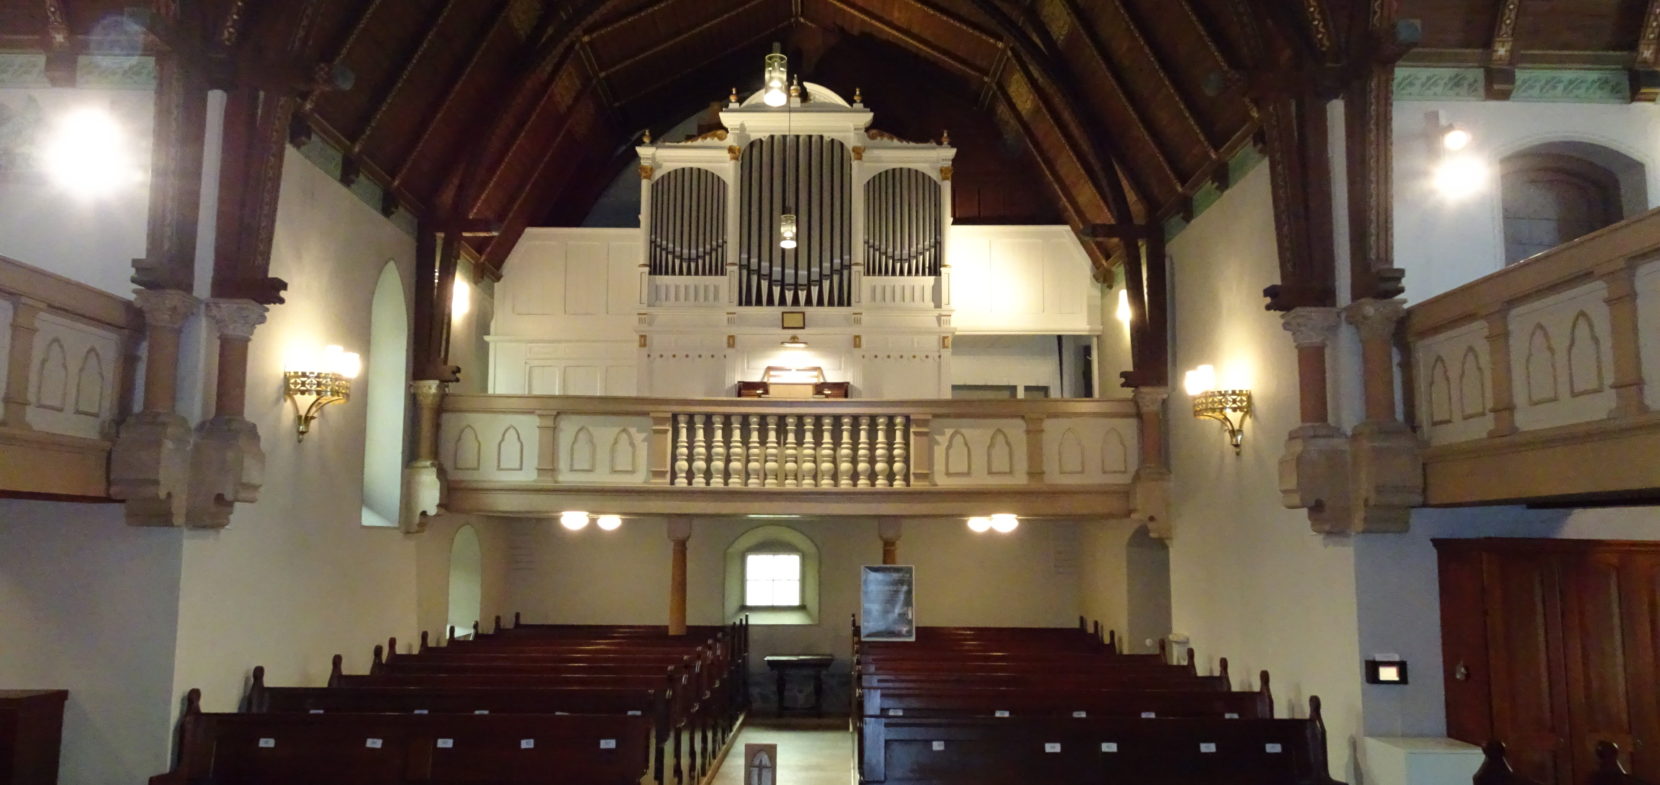 360° Blicke in die Orgel